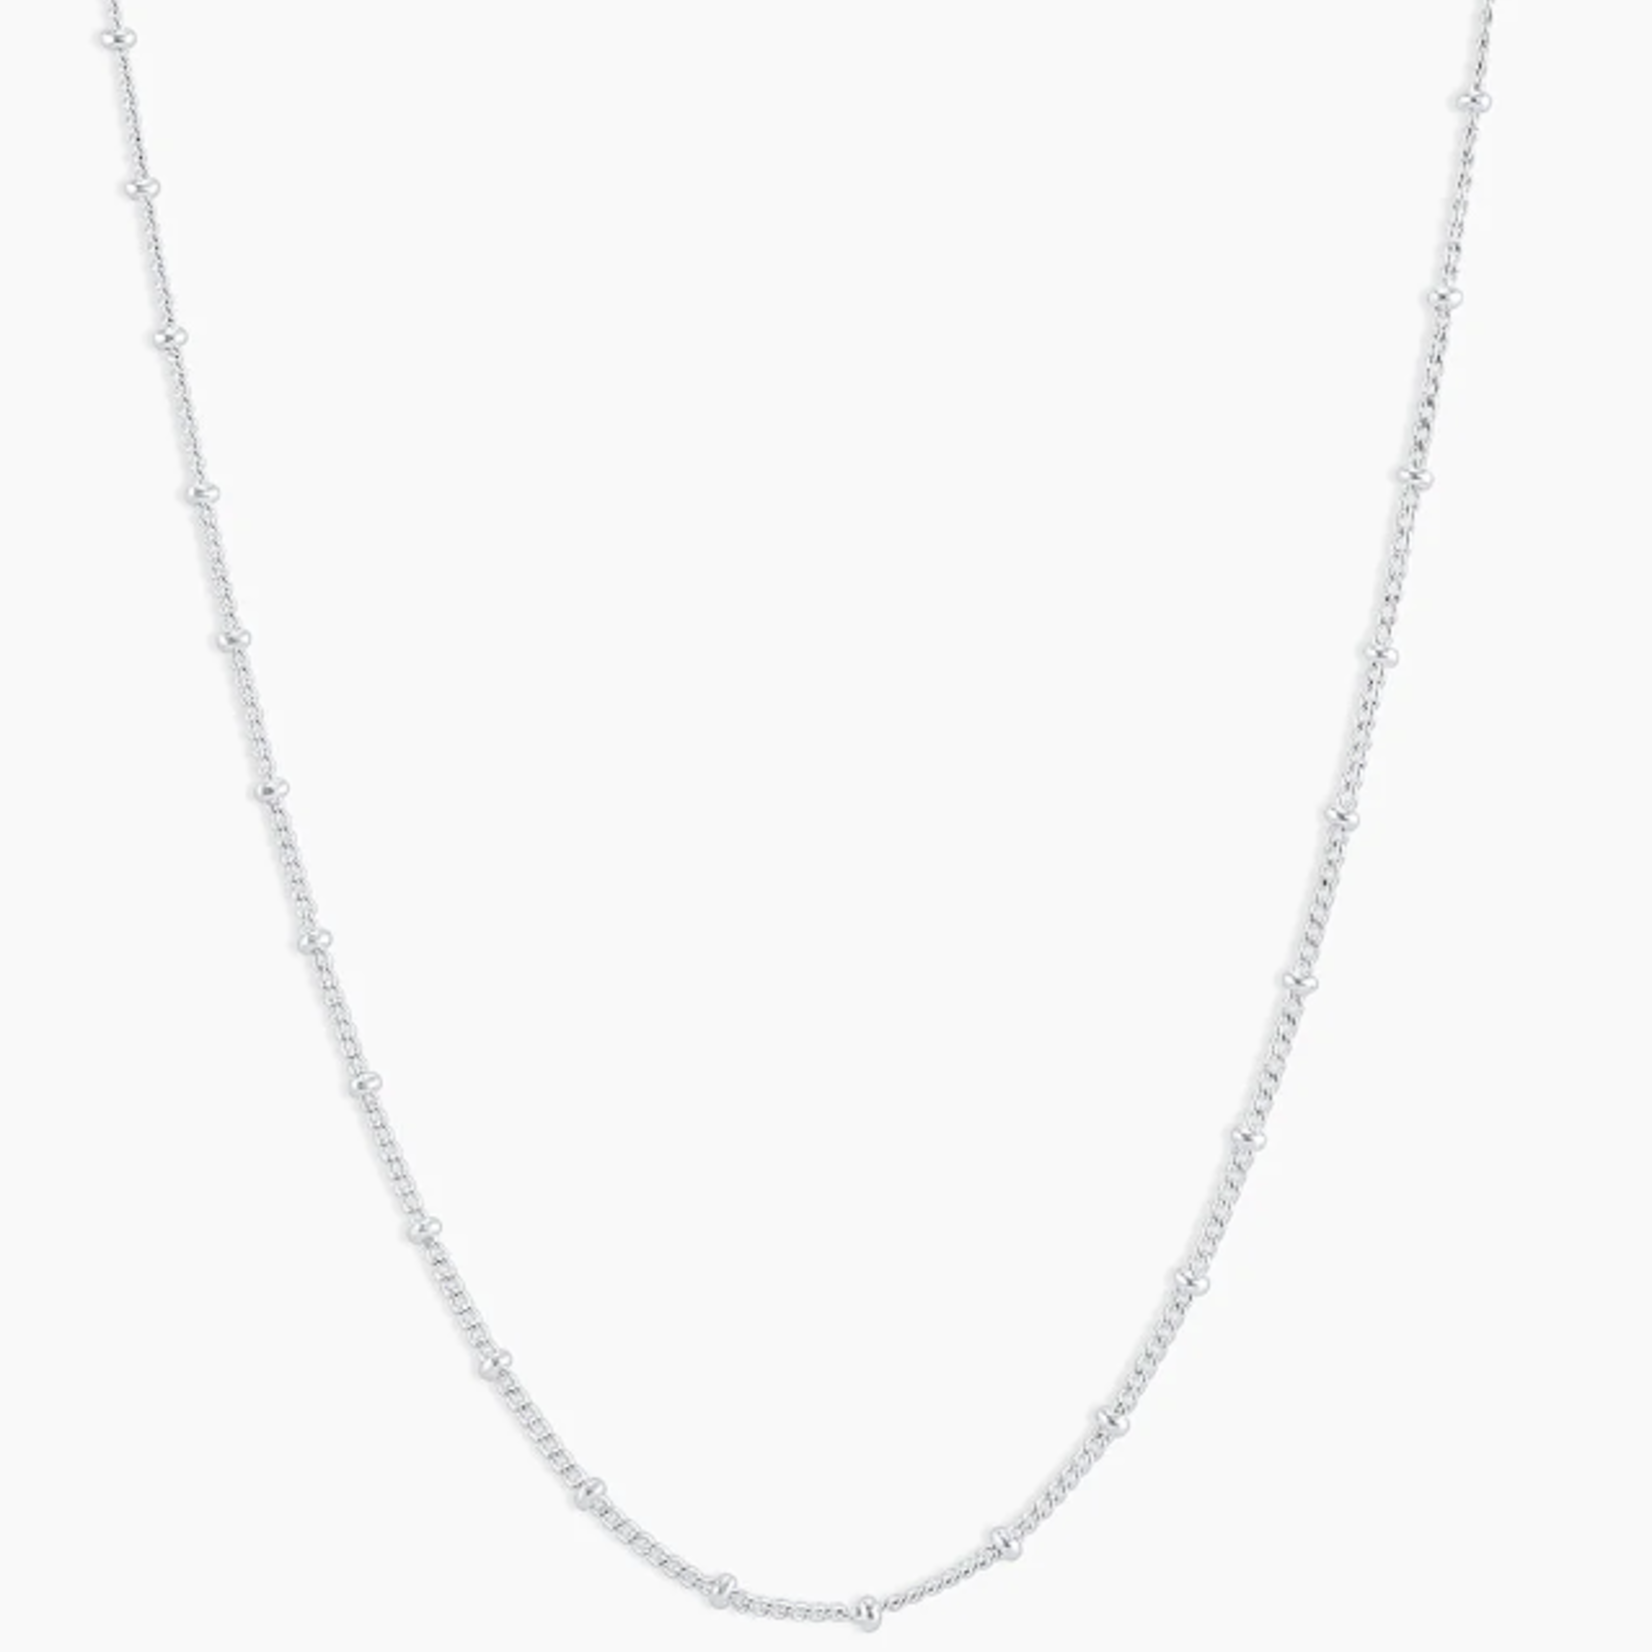 Bali Necklace - Silver